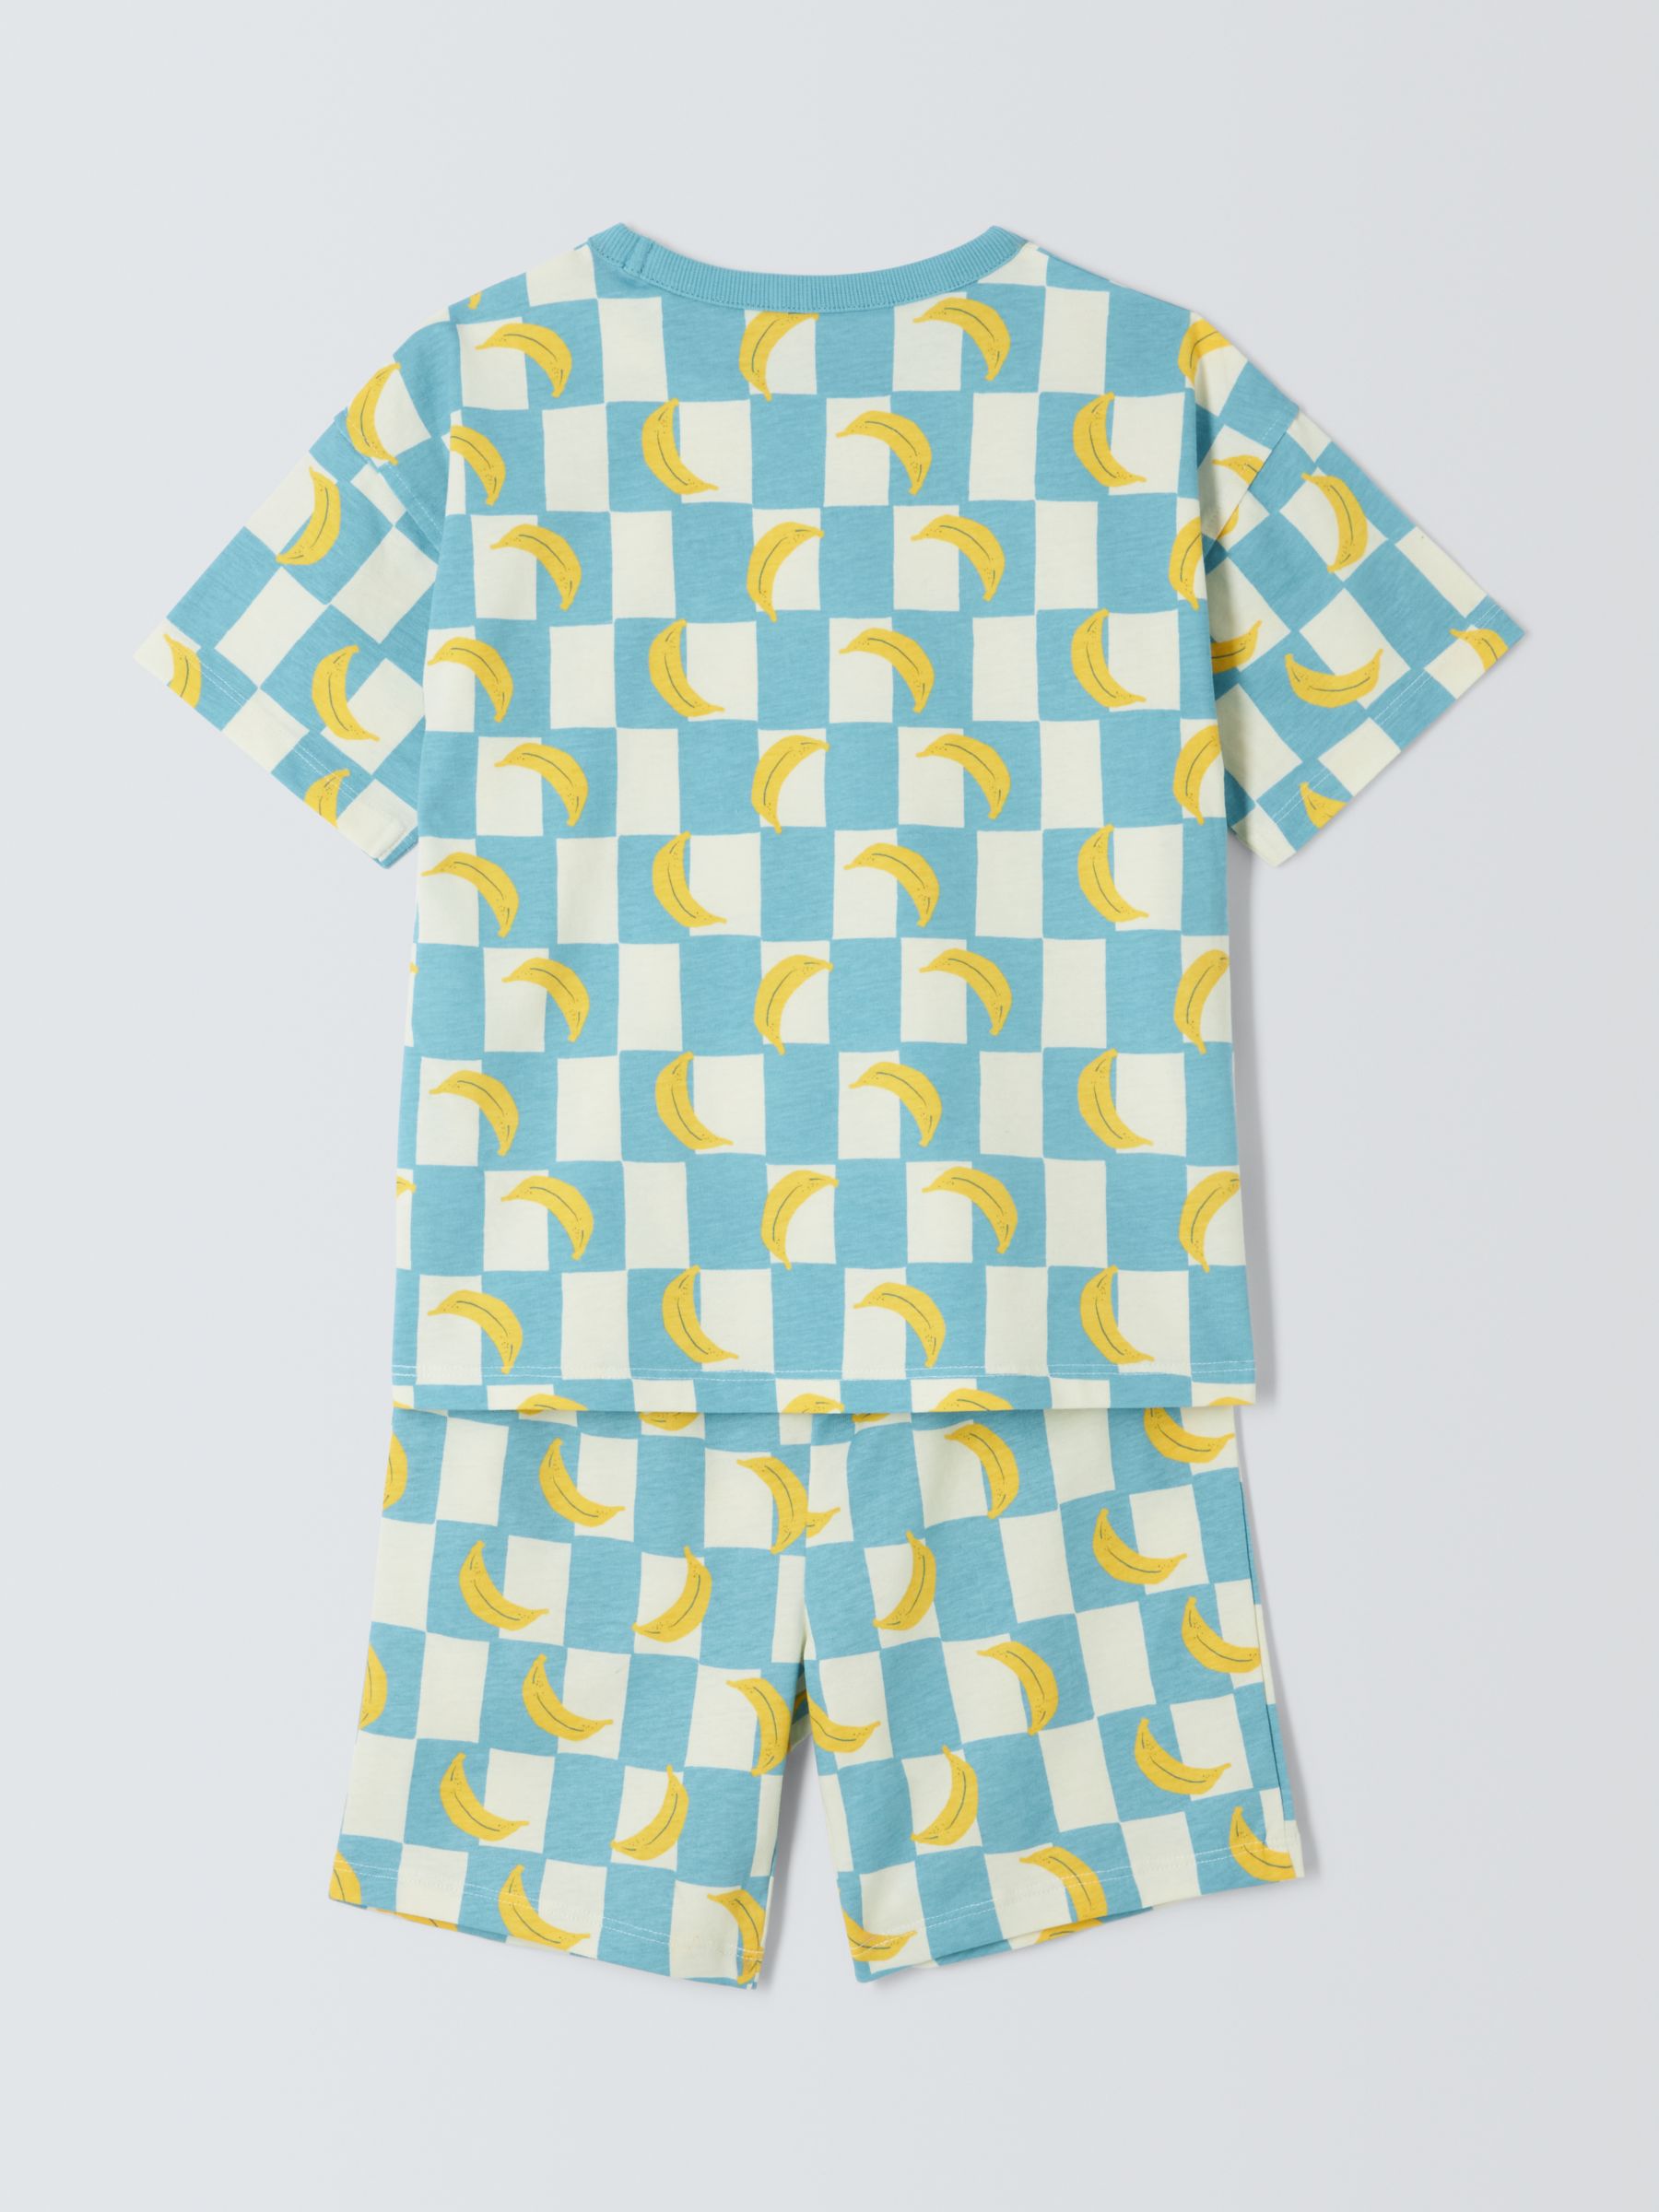 John Lewis ANYDAY Kids' Banana Print Short Pyjamas, Blue/Multi, 10 years